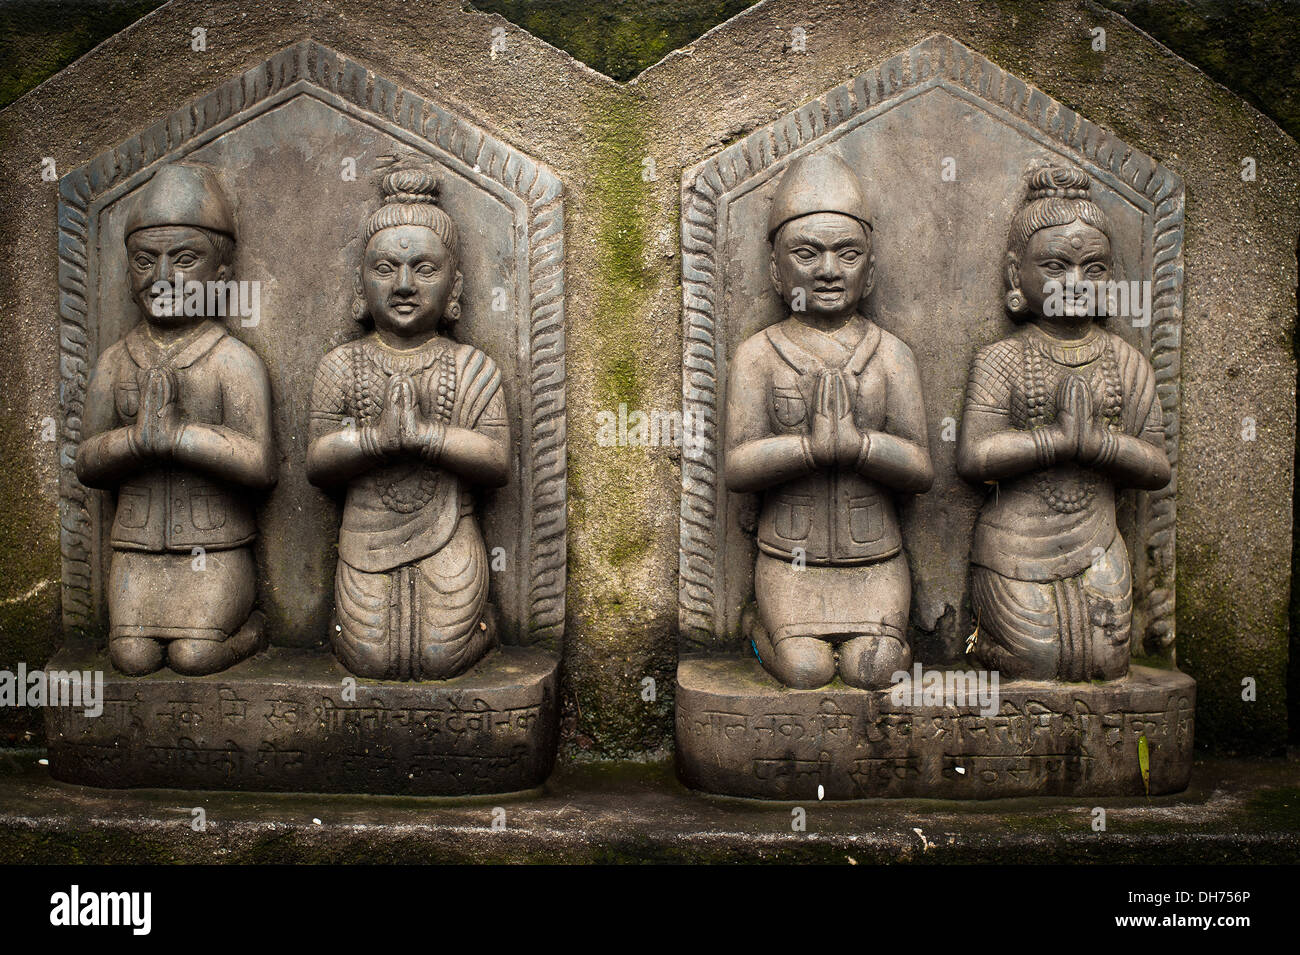 Sculpture de prier les peuples. Détails de l'architecture au sanctuaire bouddhiste Swayambhunath Stupa. Monkey Temple du Népal, Kathmandu Banque D'Images